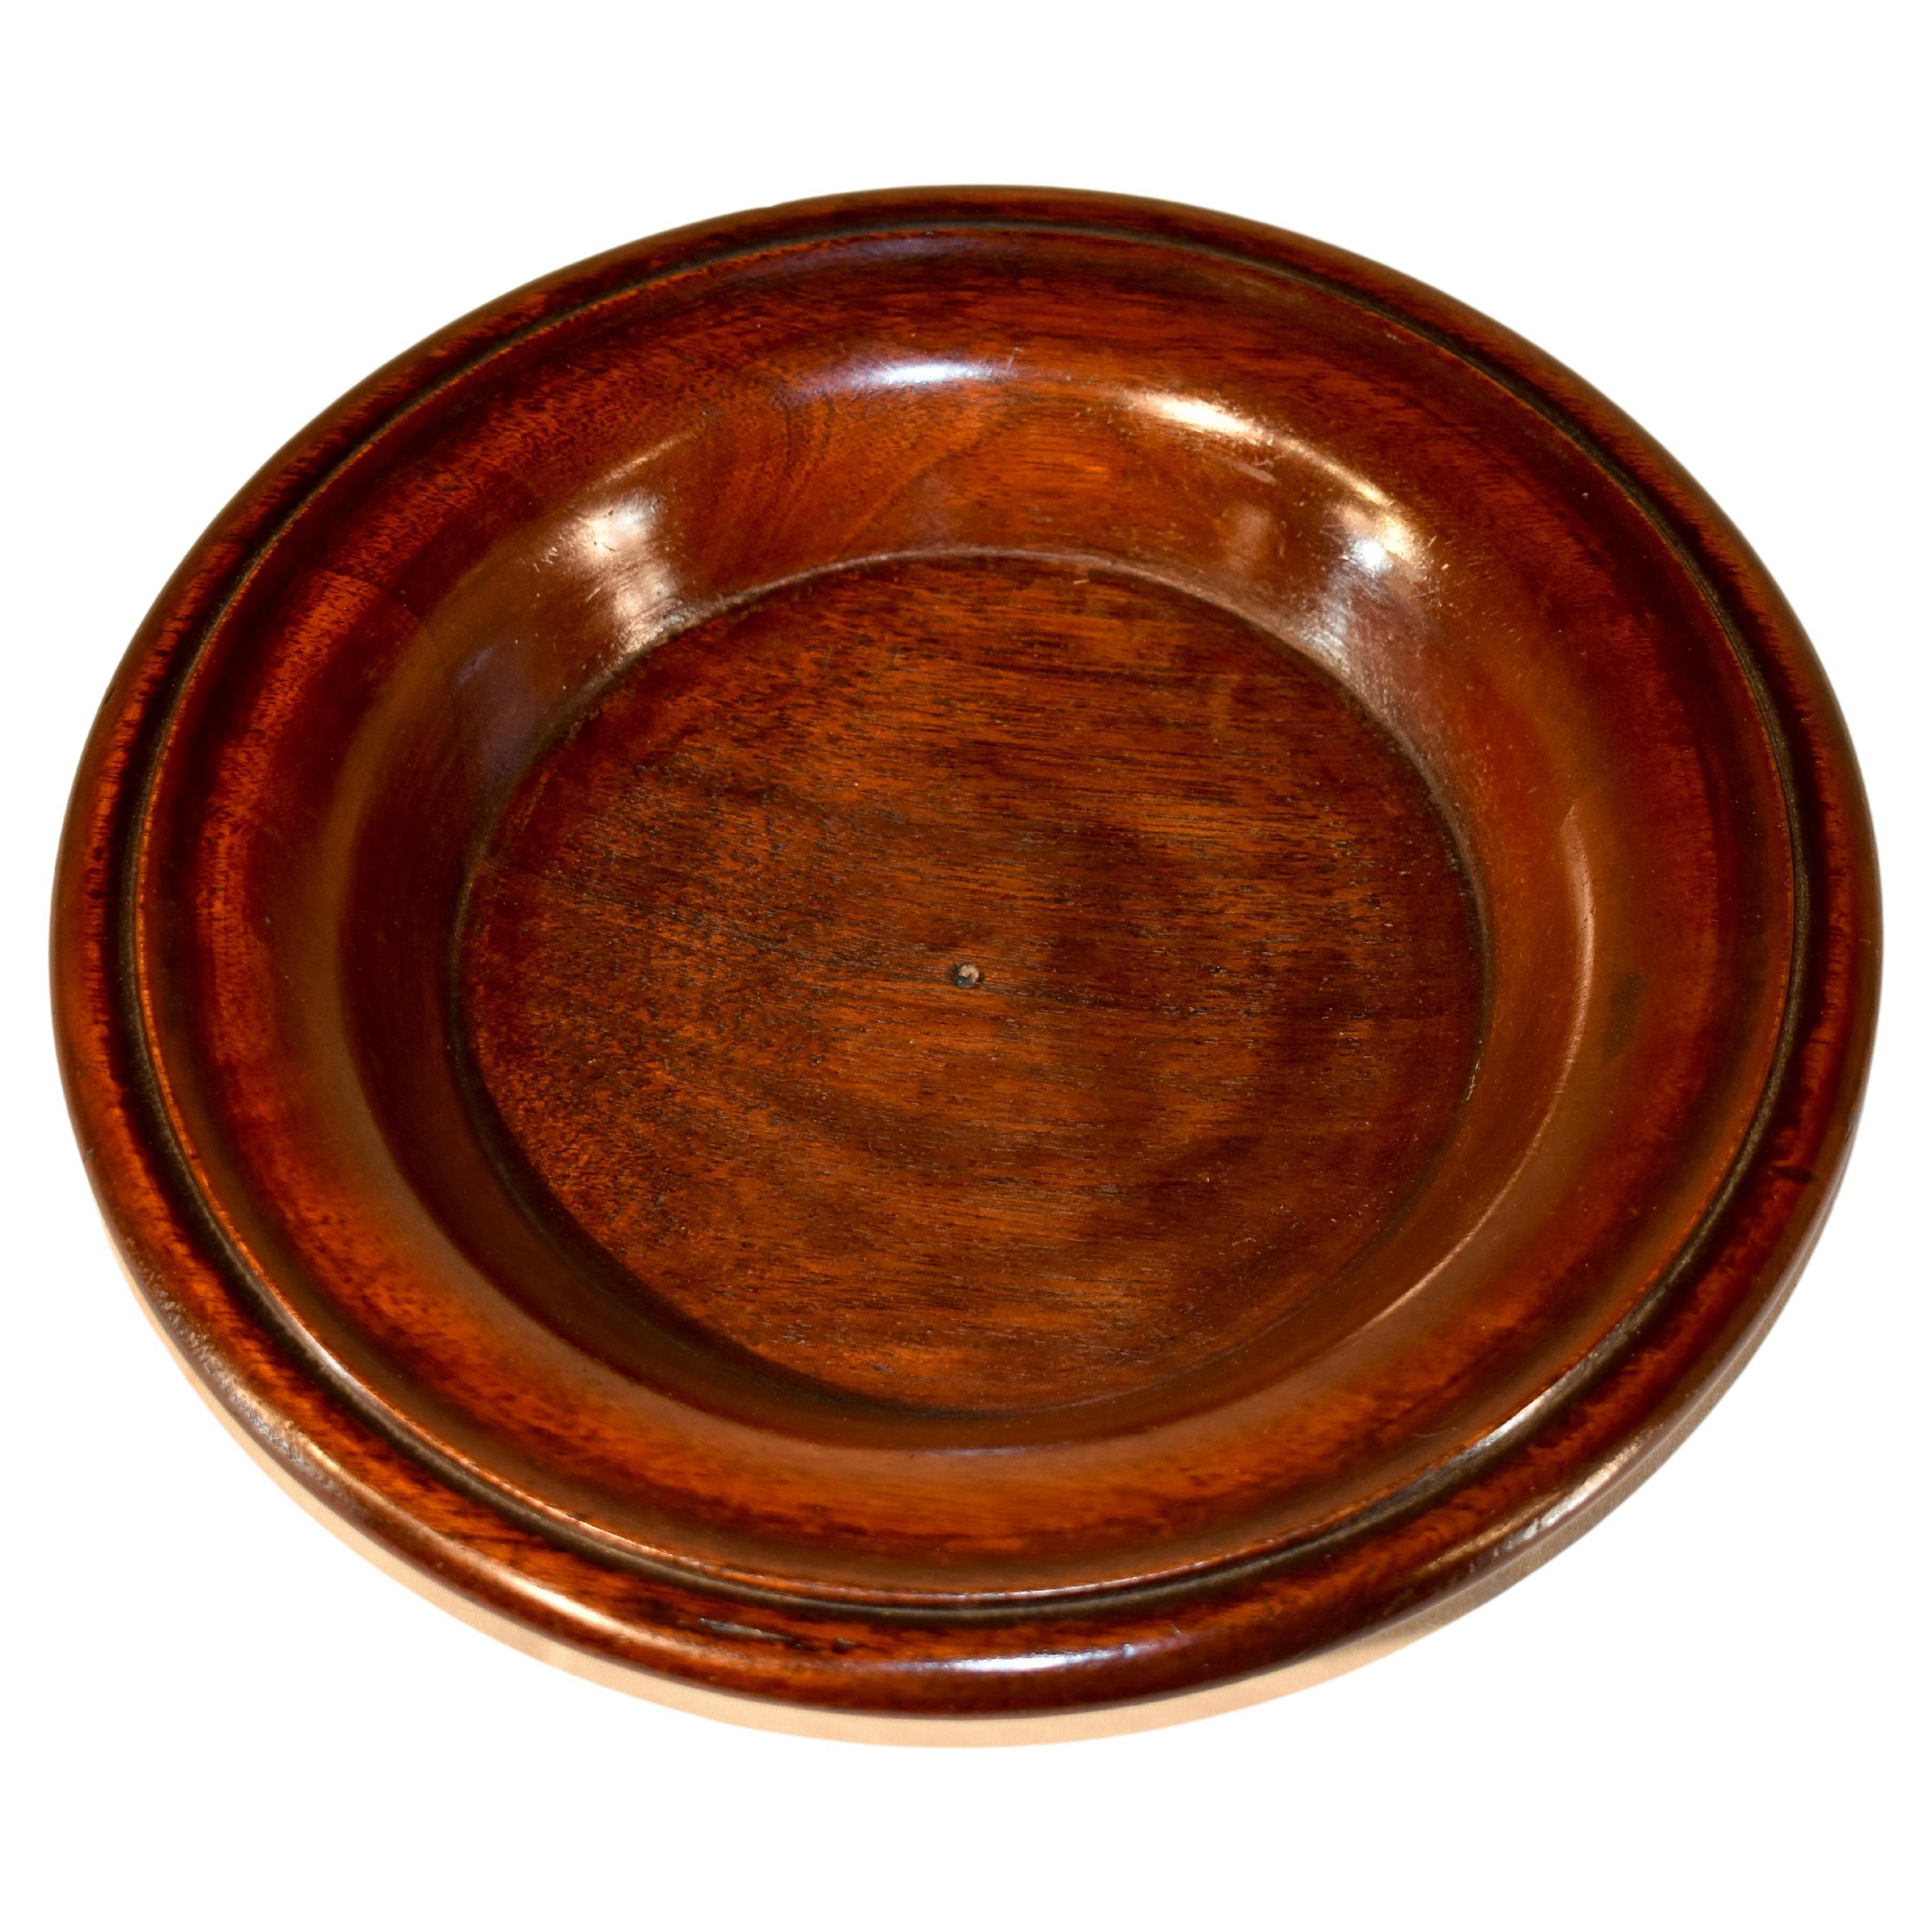 Handgedrechselte Schale aus edwardianischer Eiche, um 1900 aus England.  Er ist aus schön gemasertem Holz gefertigt und hat eine herrliche Patina.  Sehr nützlich für jeden Ort in einem Haus!